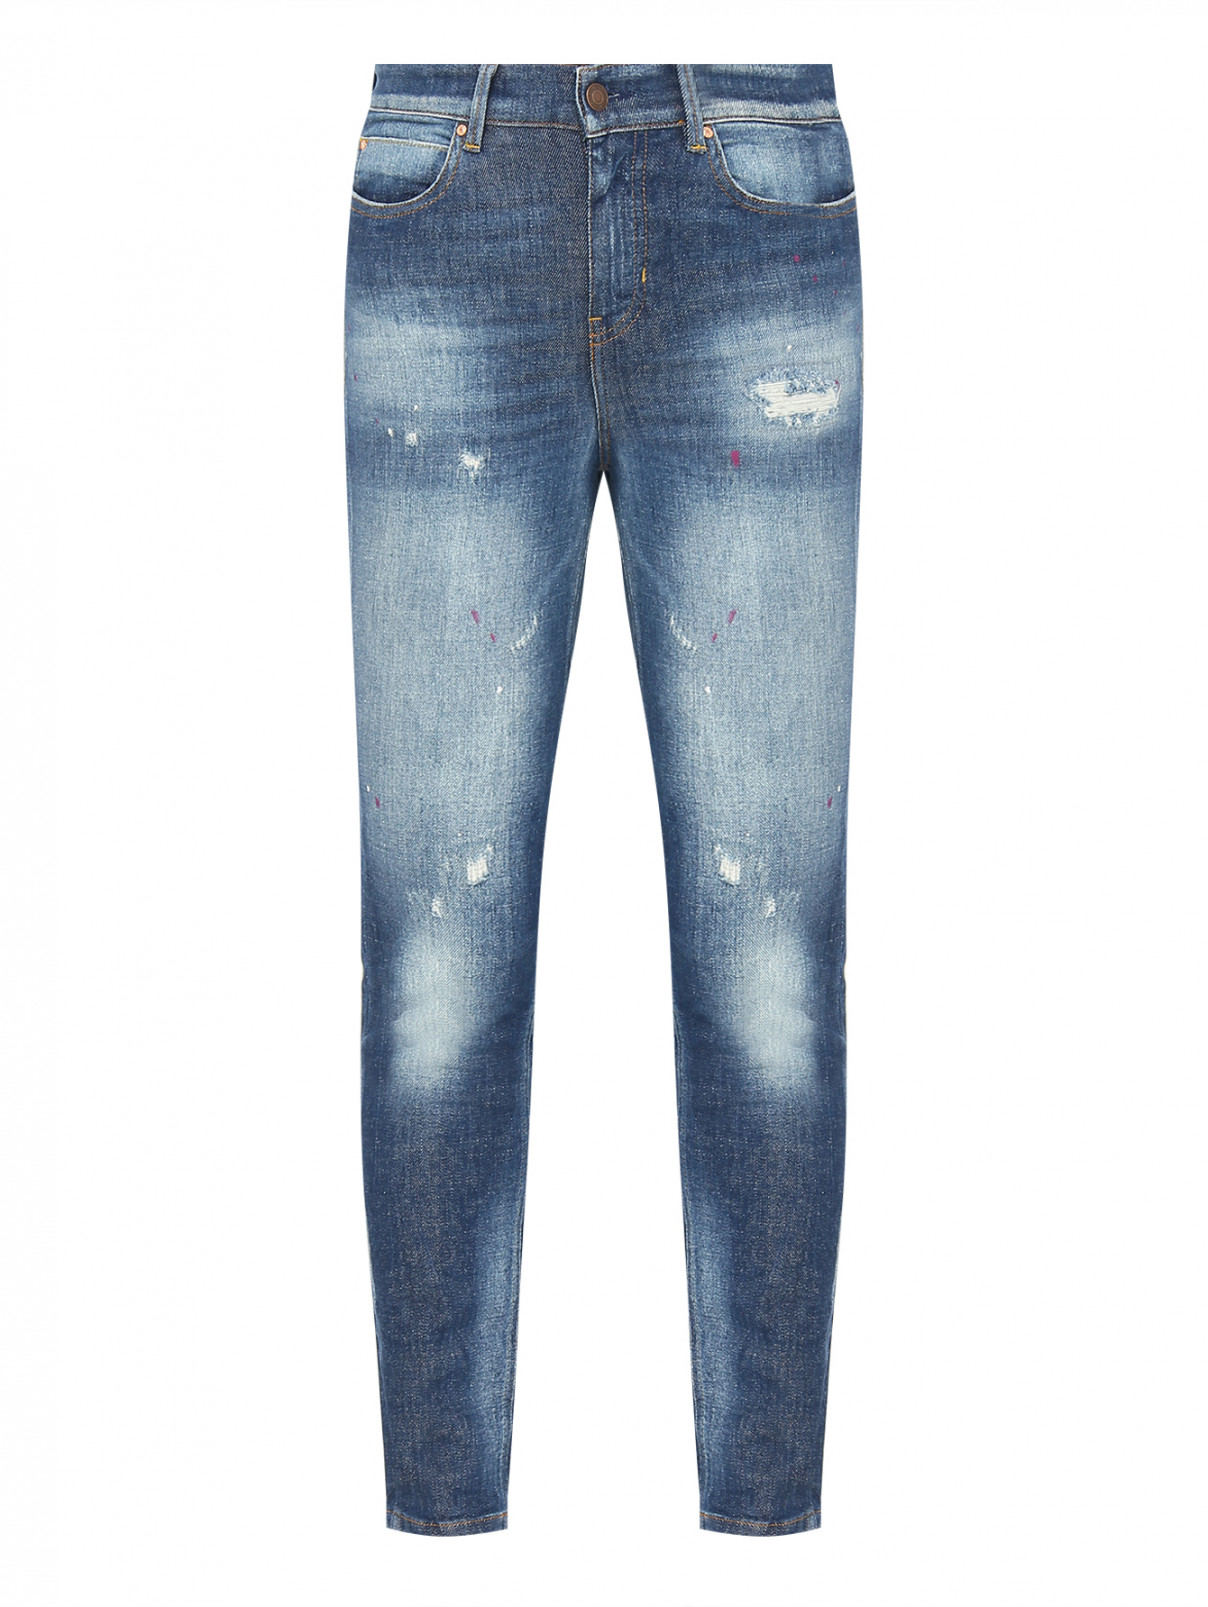 Зауженные джинсы с принтом Guess  –  Общий вид  – Цвет:  Синий